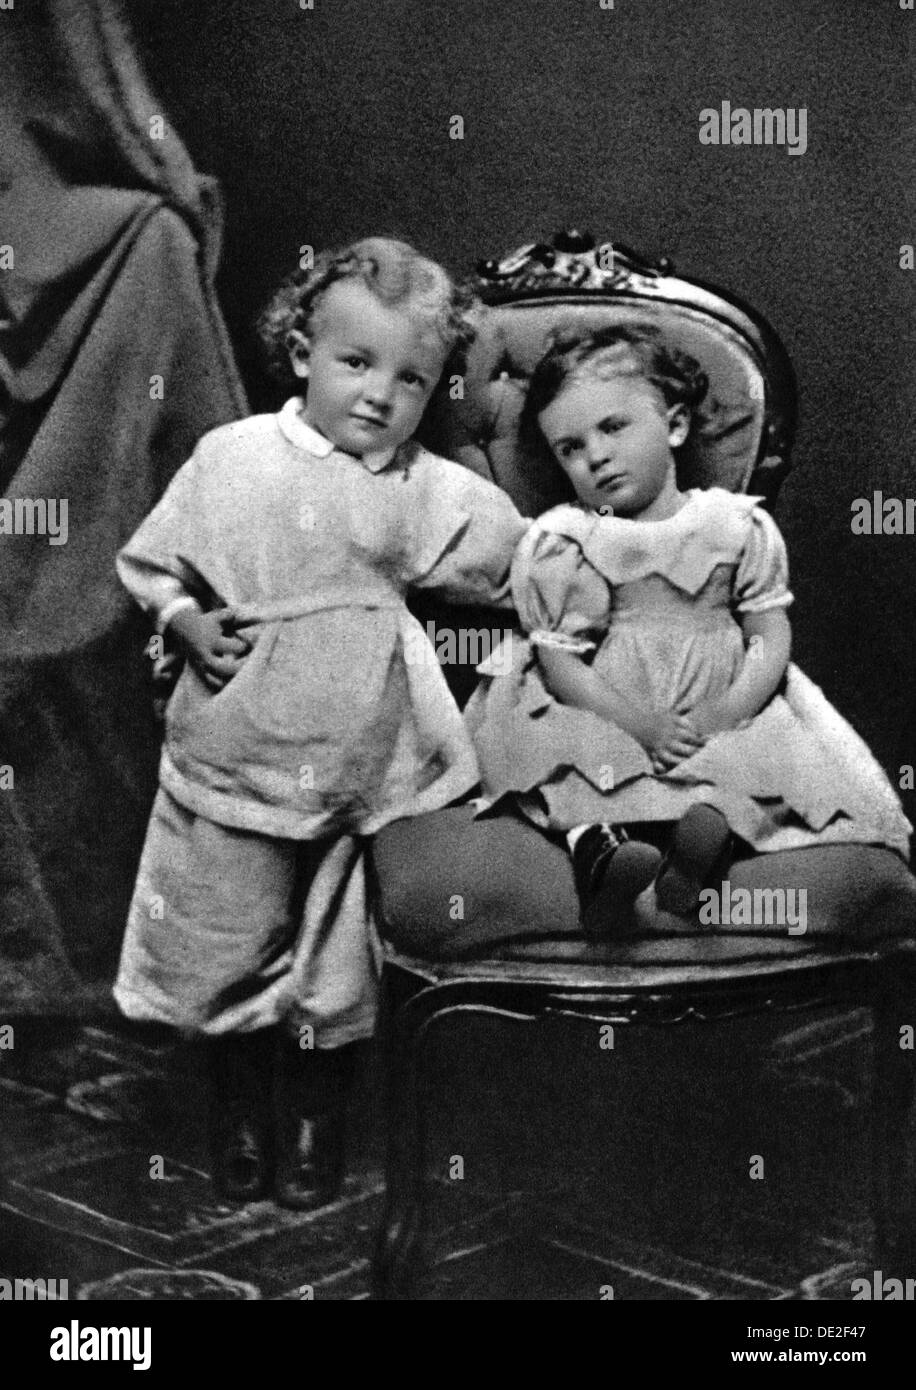 Wladimir Lenin Ilich, russischen bolschewistischen revolutionären Führer, im Alter von 4, mit seiner Schwester Olga, 1874. Artist: Unbekannt Stockfoto